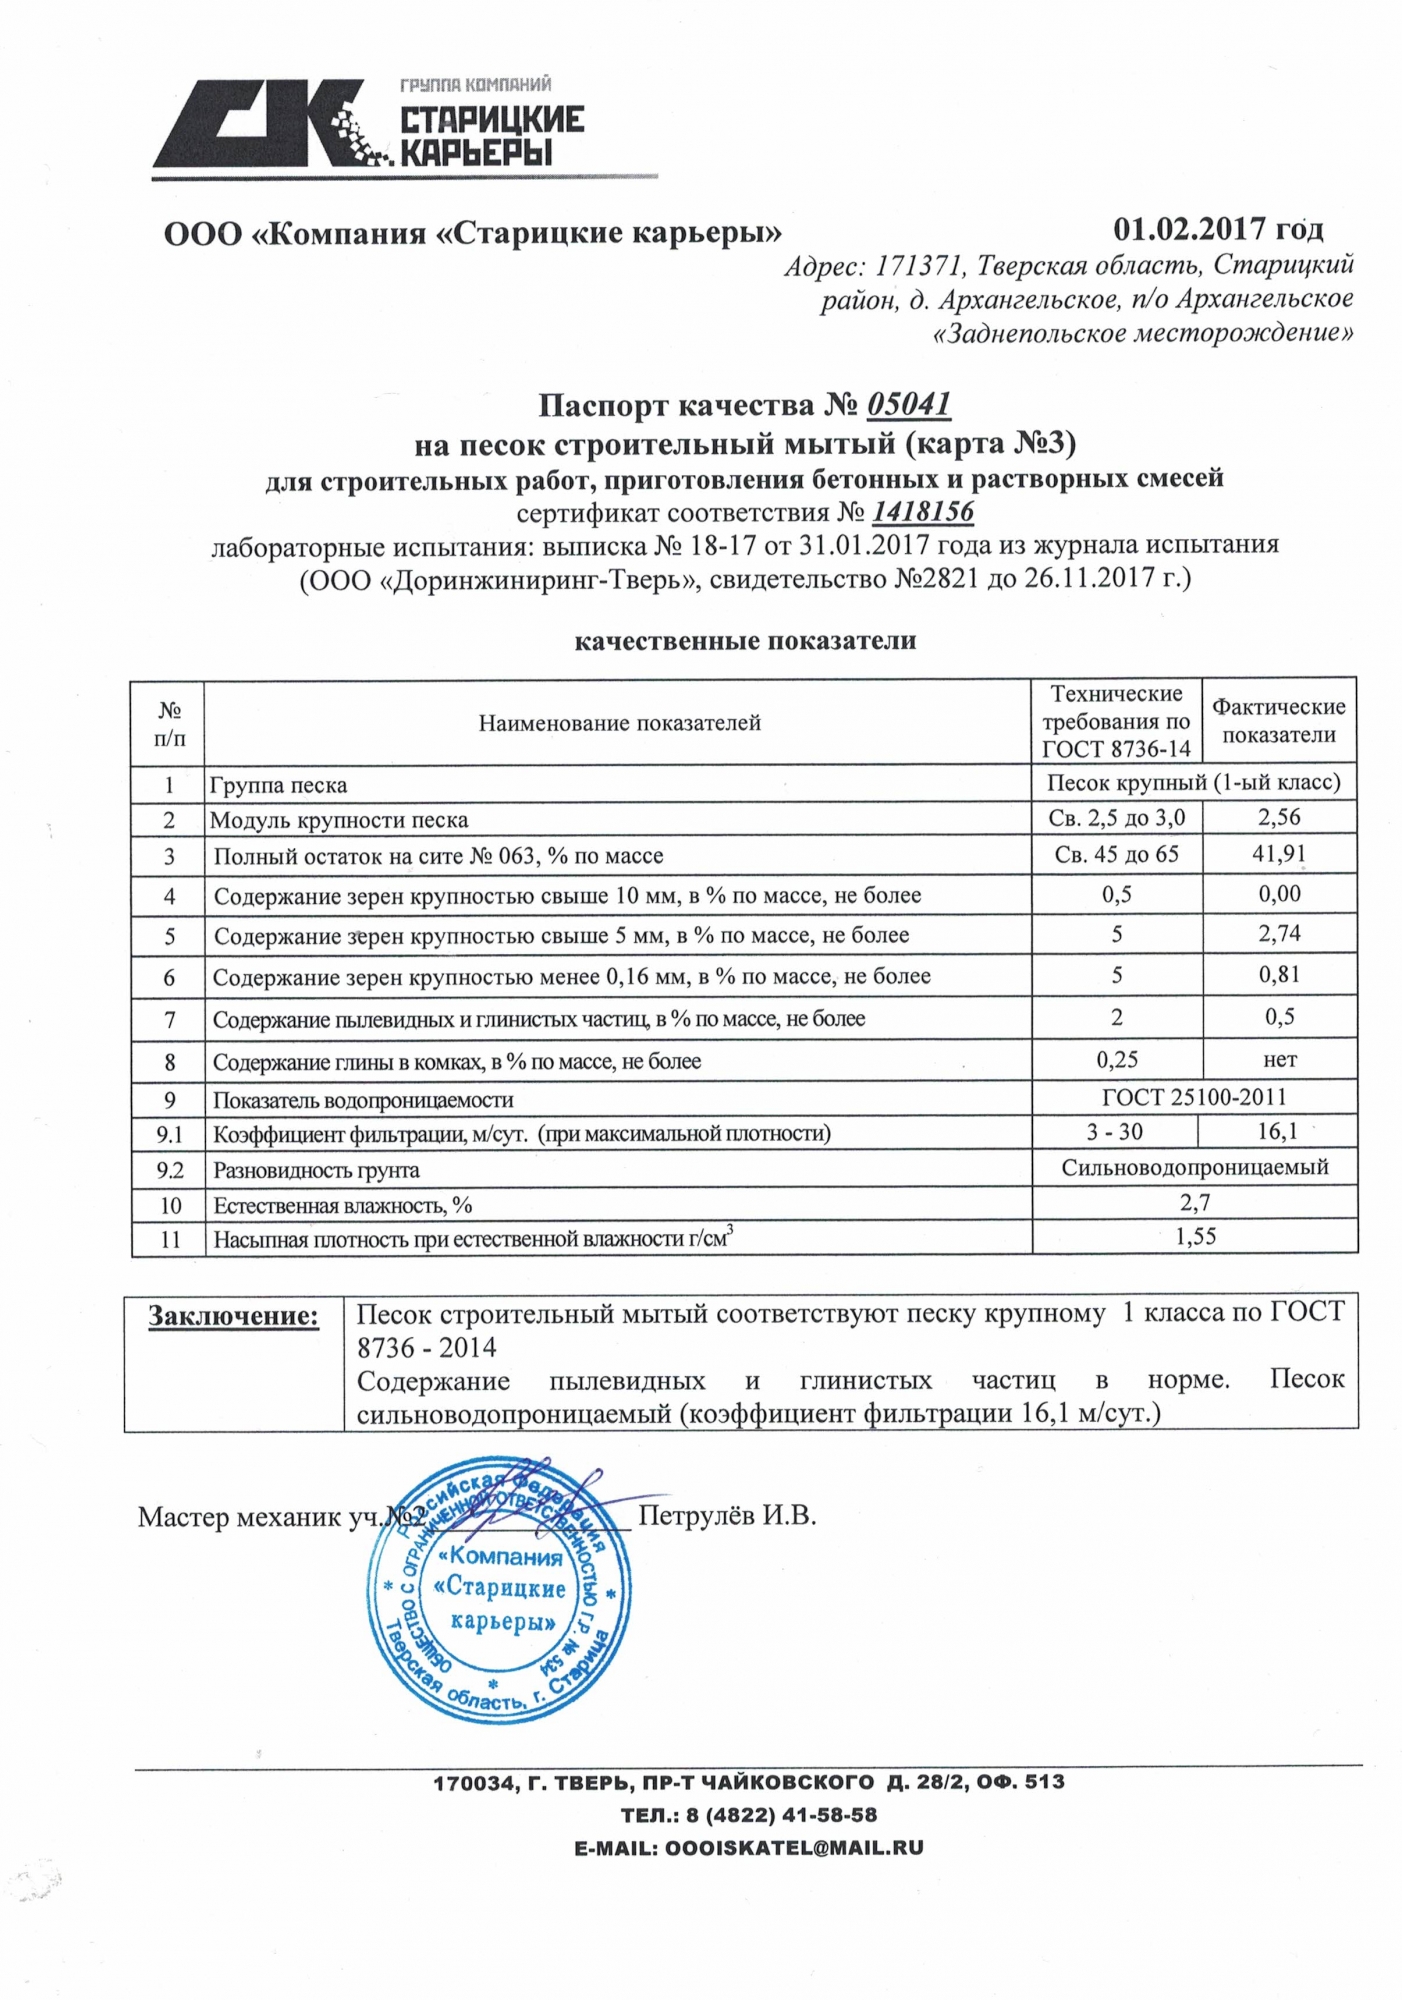 Паспорт качества на песок строительный Облнерудпром